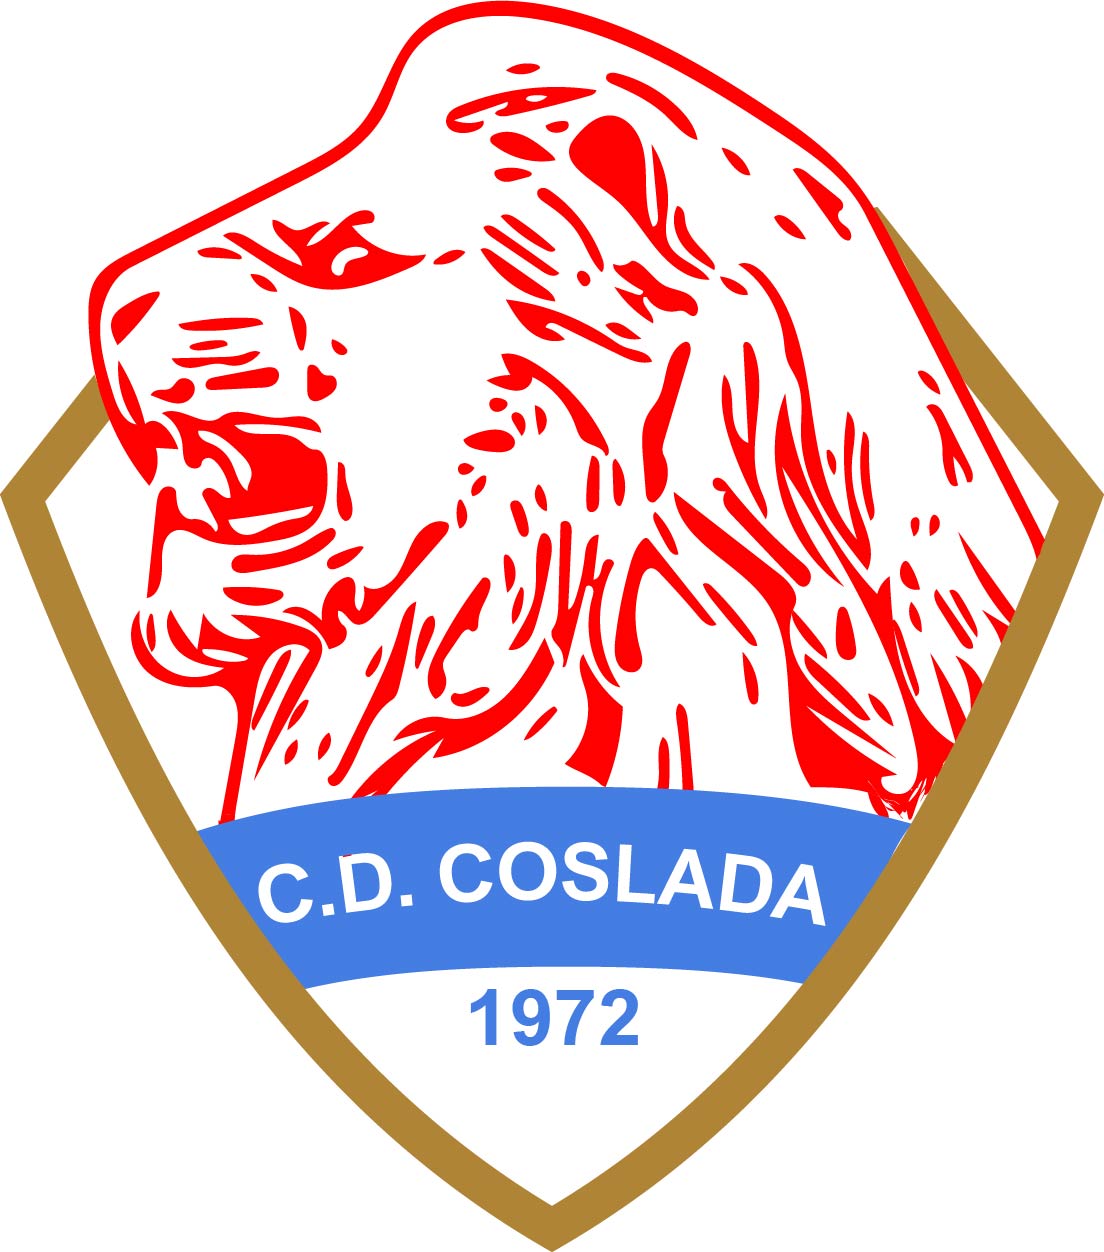 C.D. COSLADA 'C'